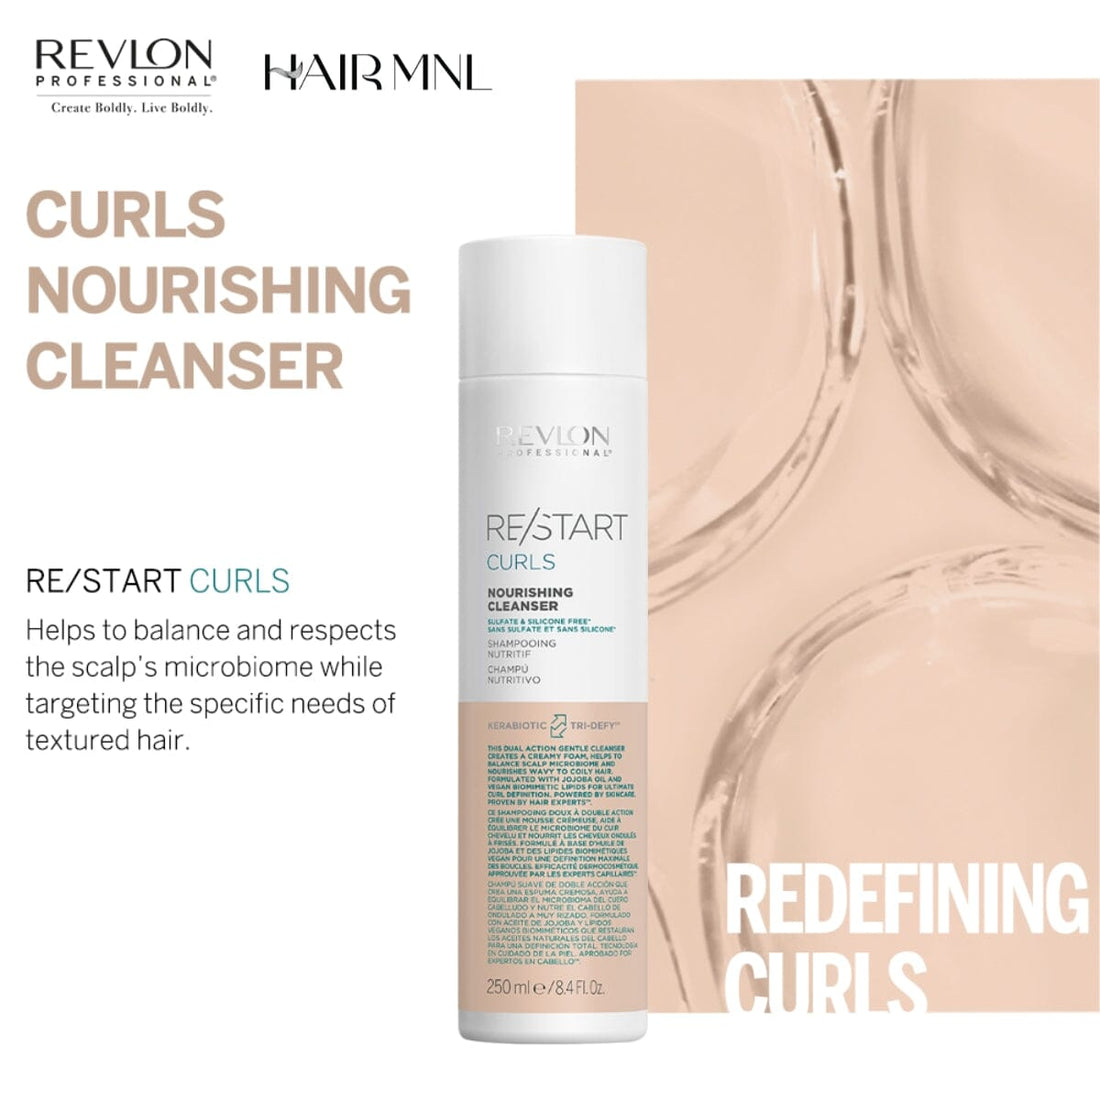 Revlon Pro ReStart Curls Nourishing Cleanser 250ml - HairMNL - HairMNL